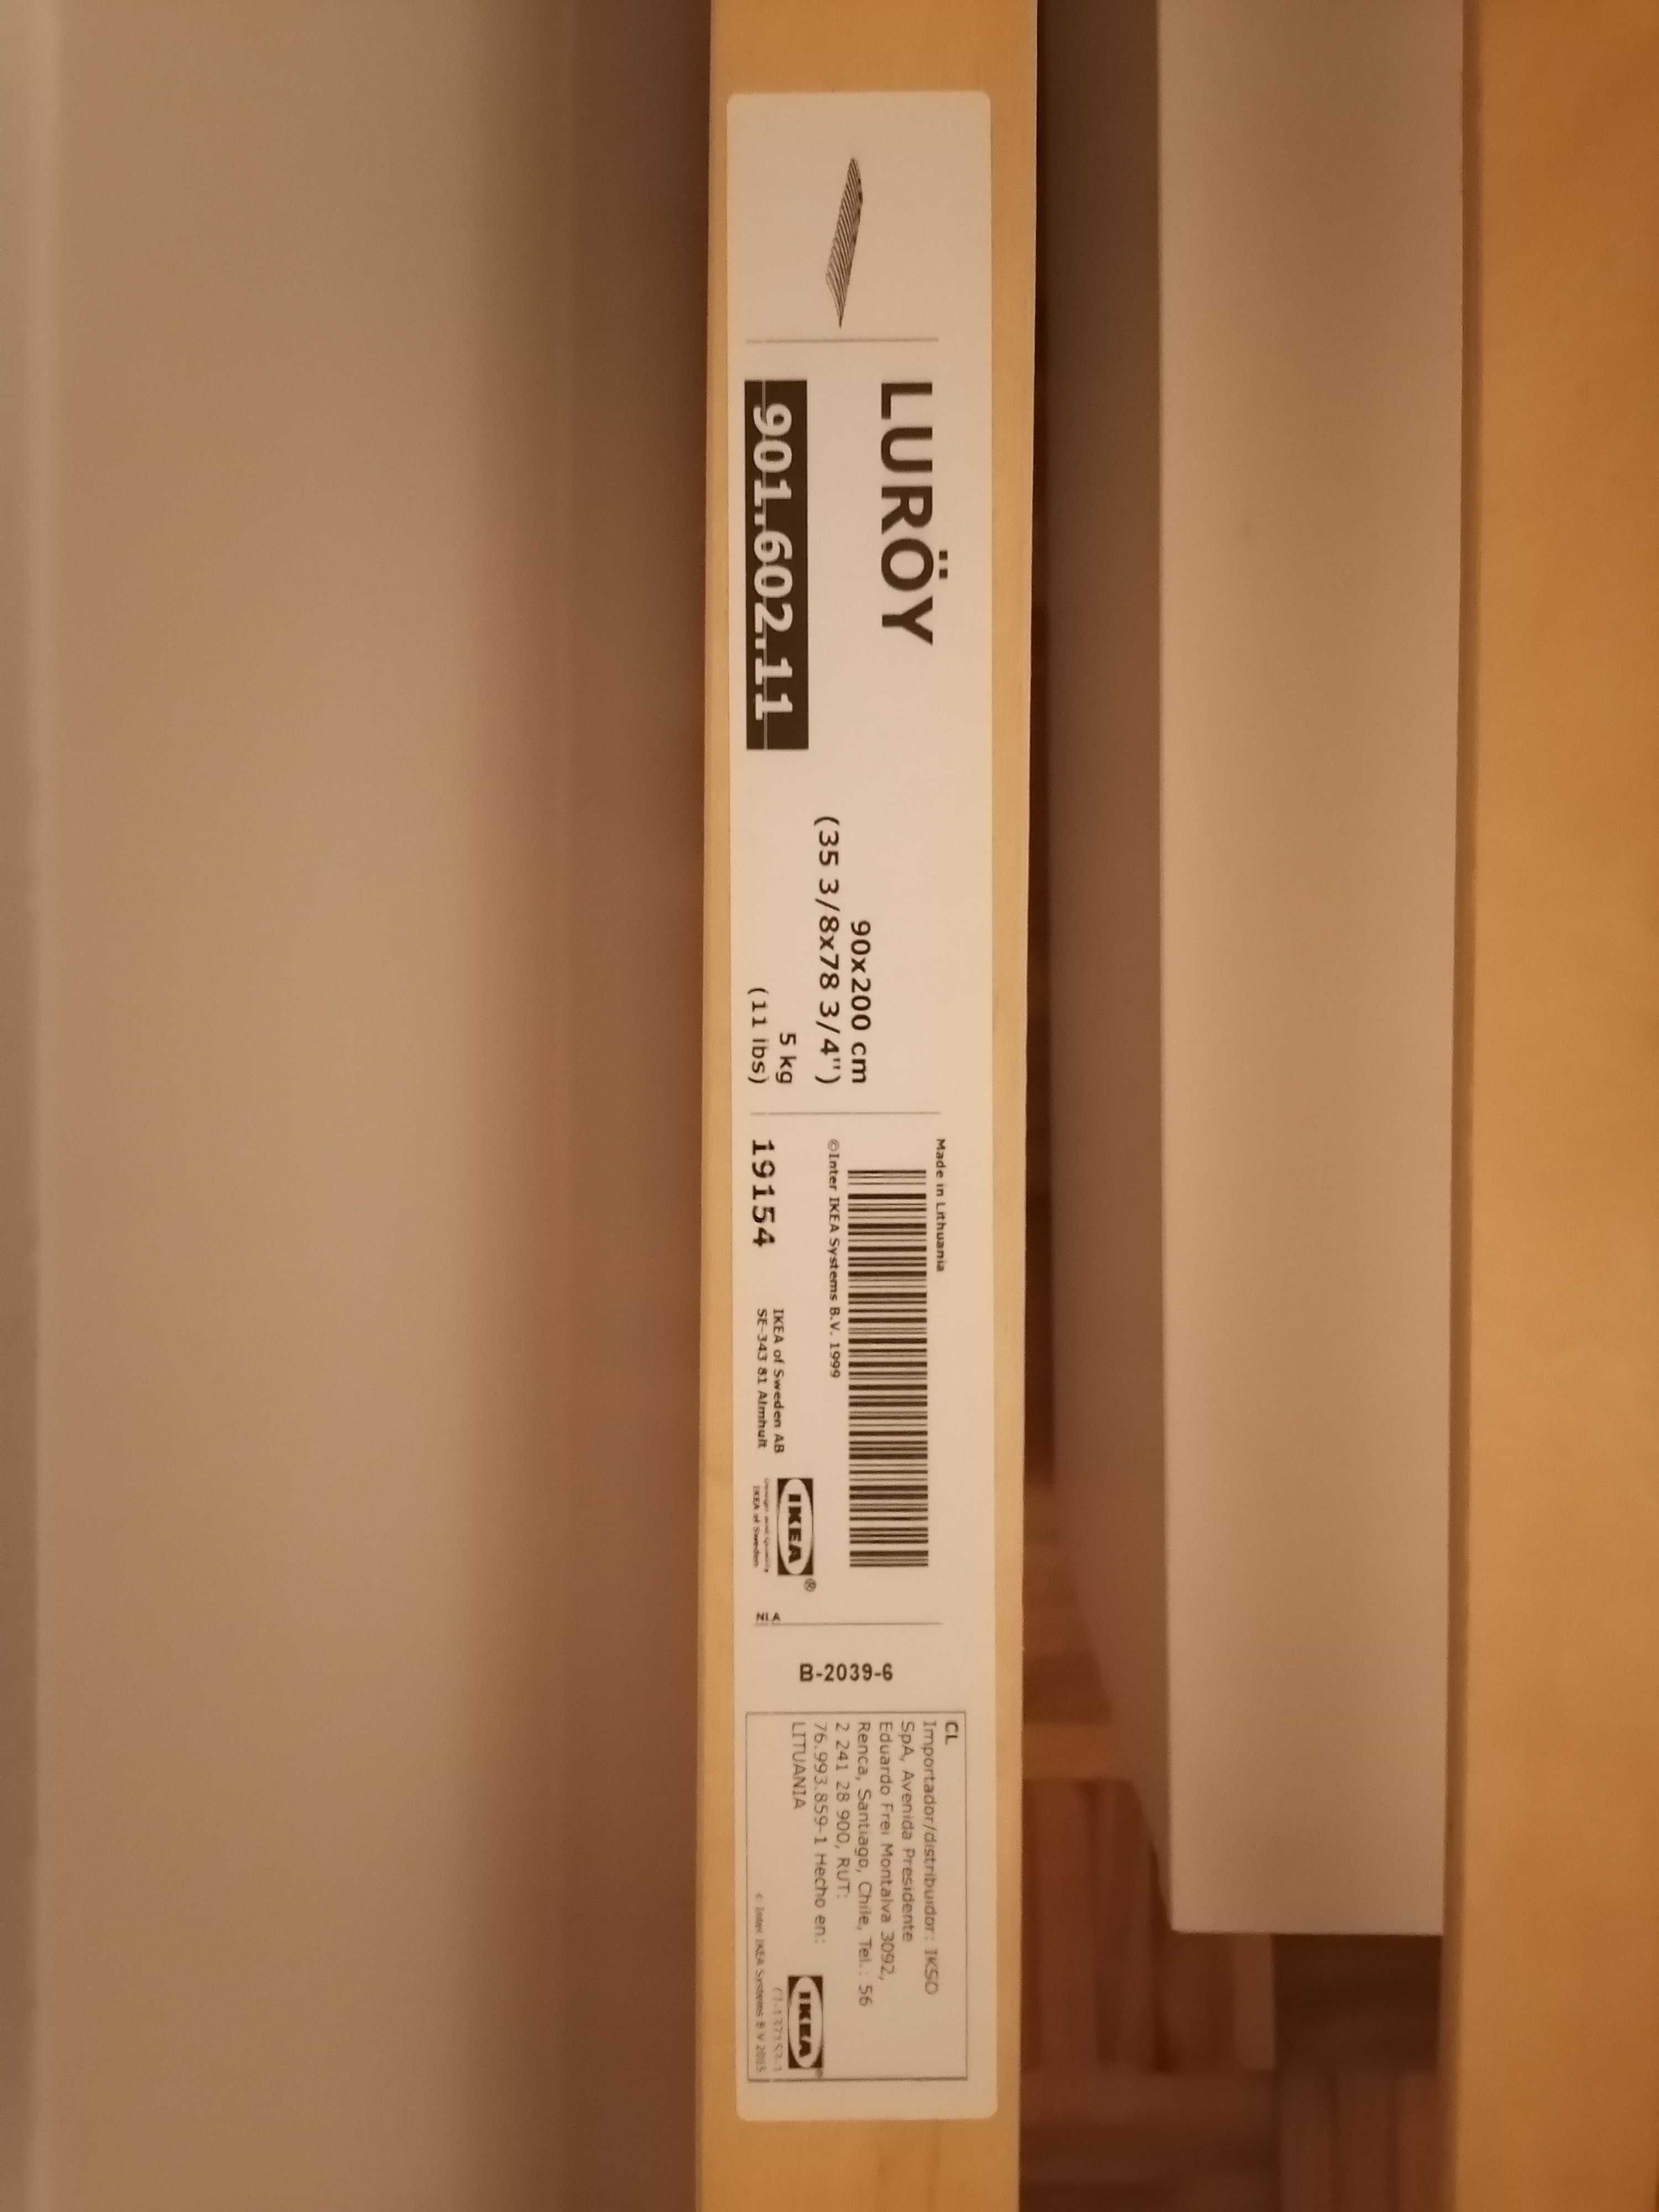 Cama IKEA individual